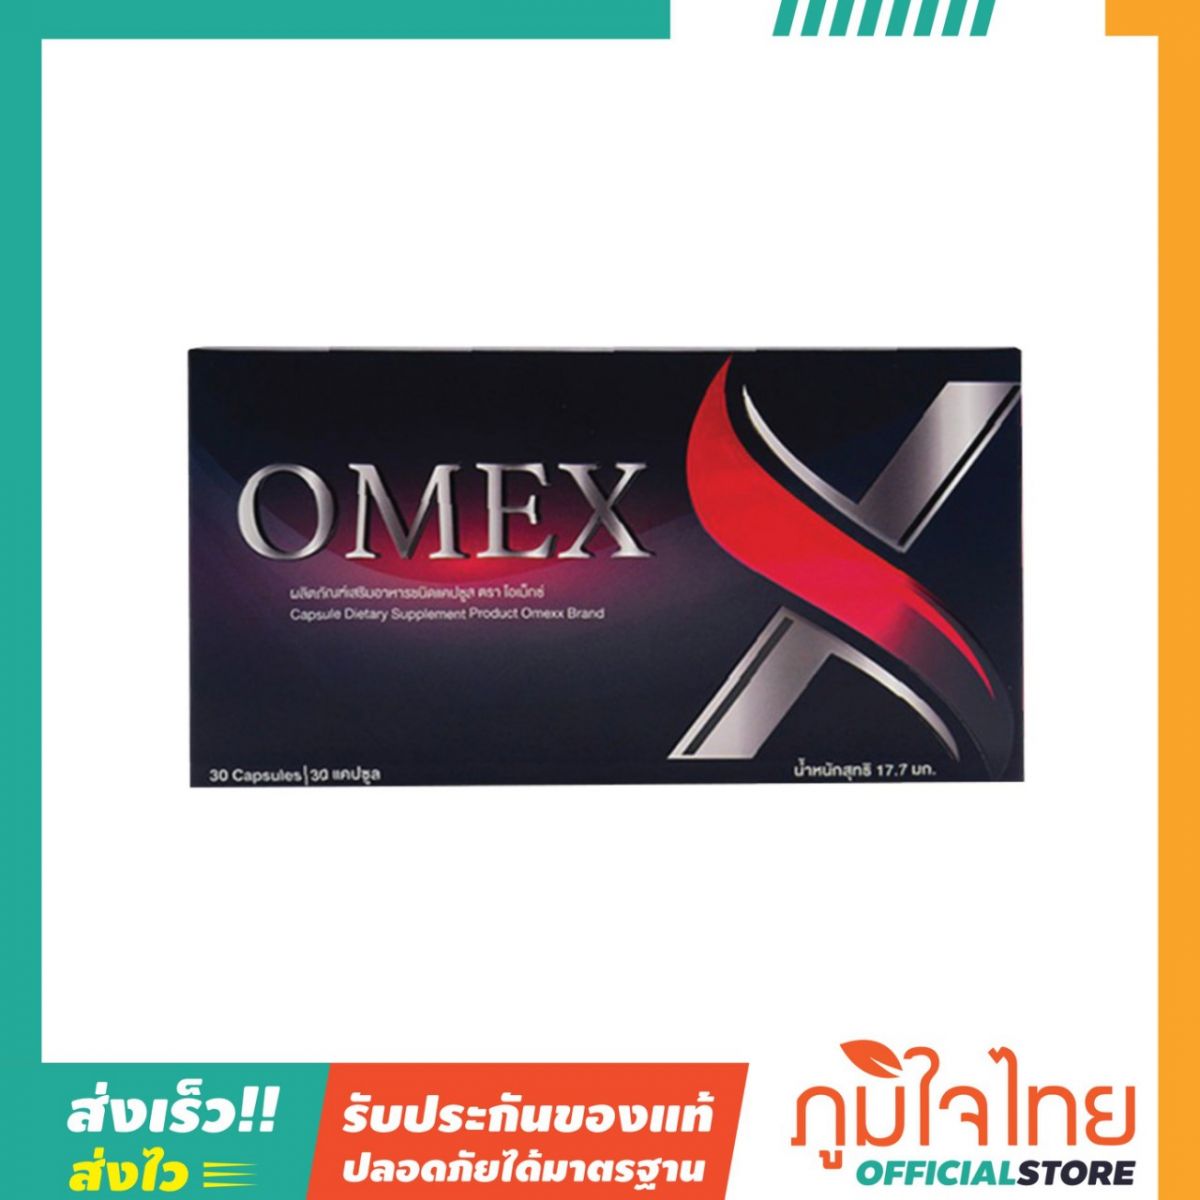 OMEX ผลิตภัณฑ์เสริมอาหาร 30แคป สุเพอร์ร่า